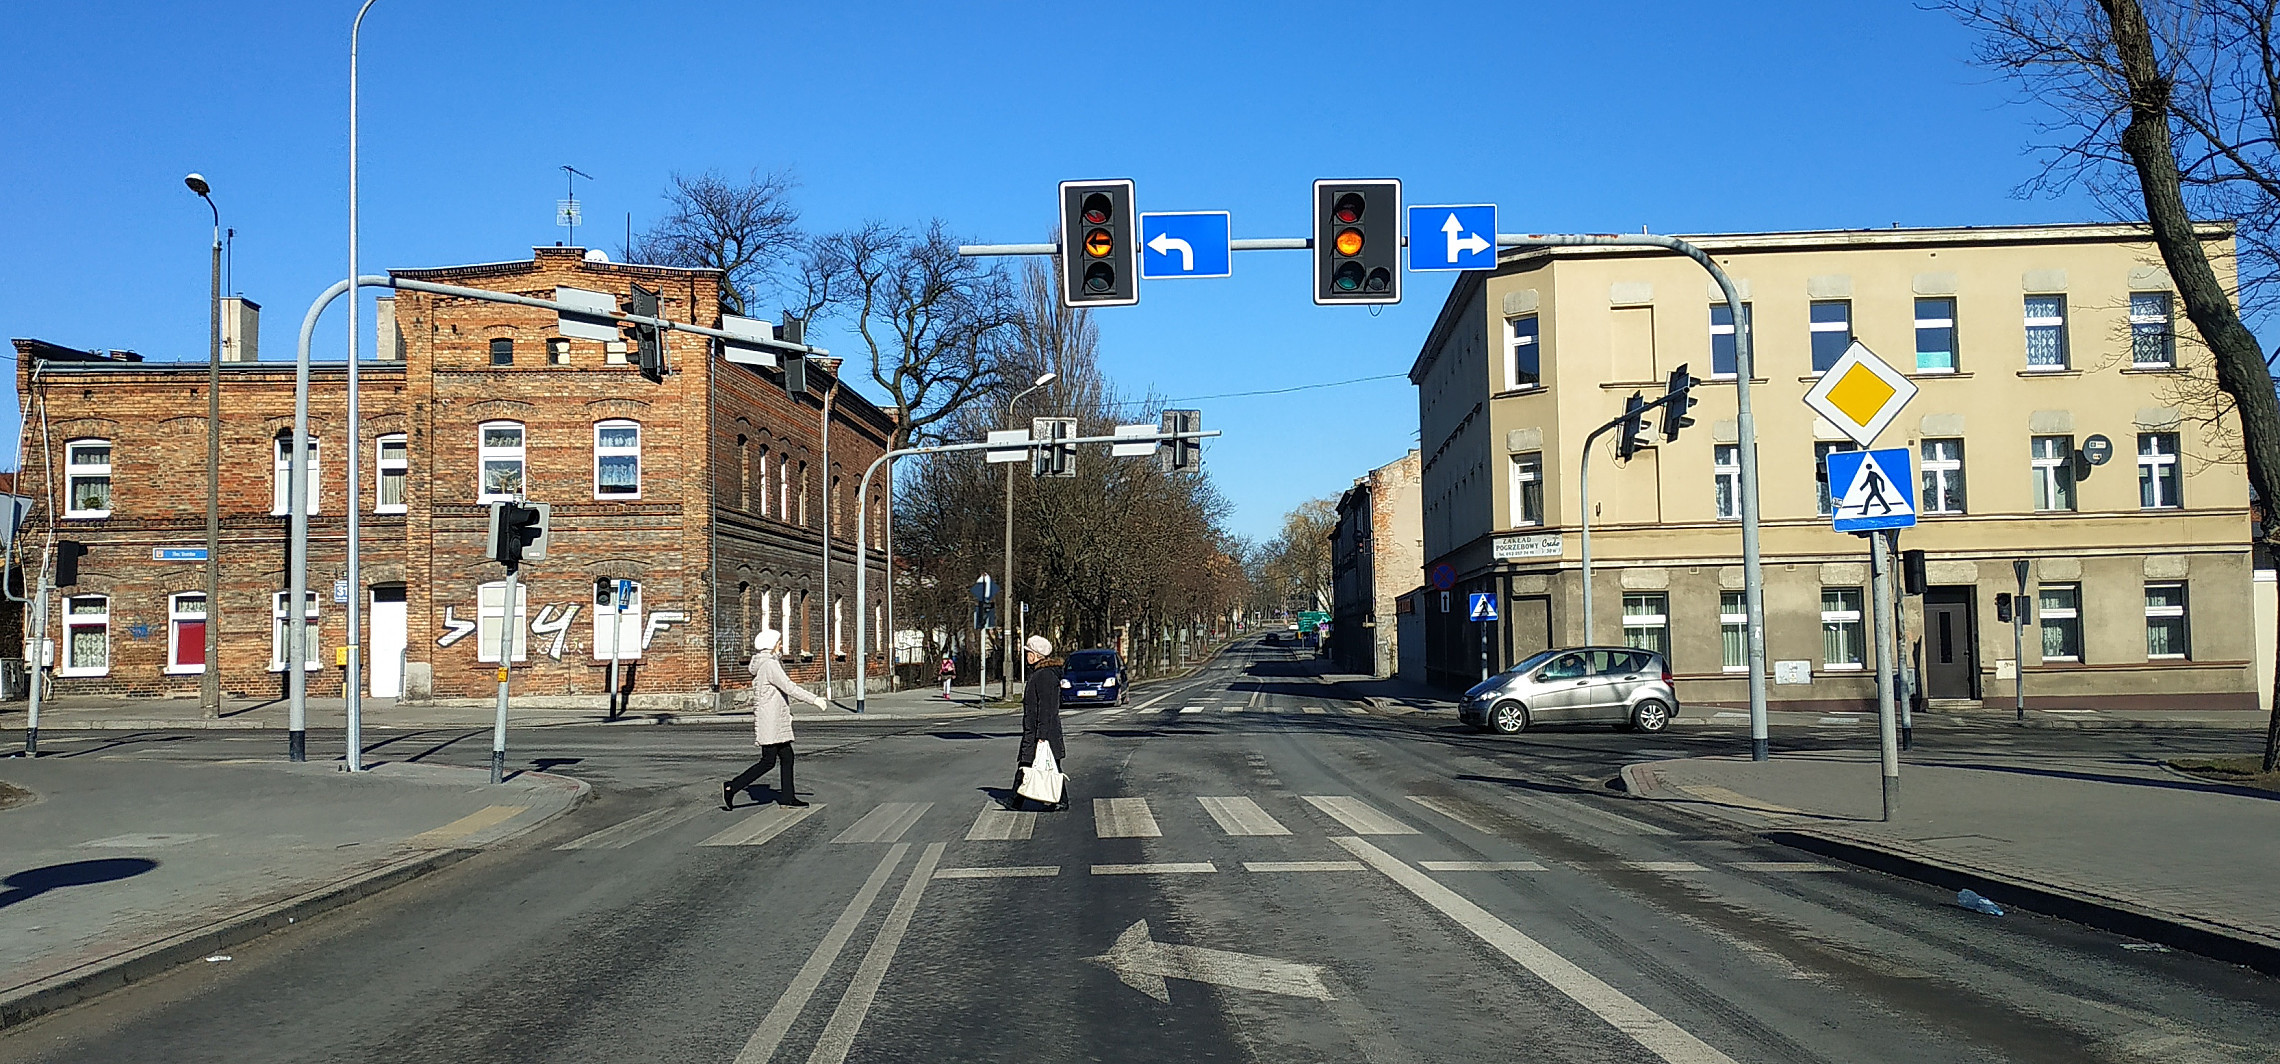 Inowrocław - Nie działa sygnalizacja świetlna w centrum